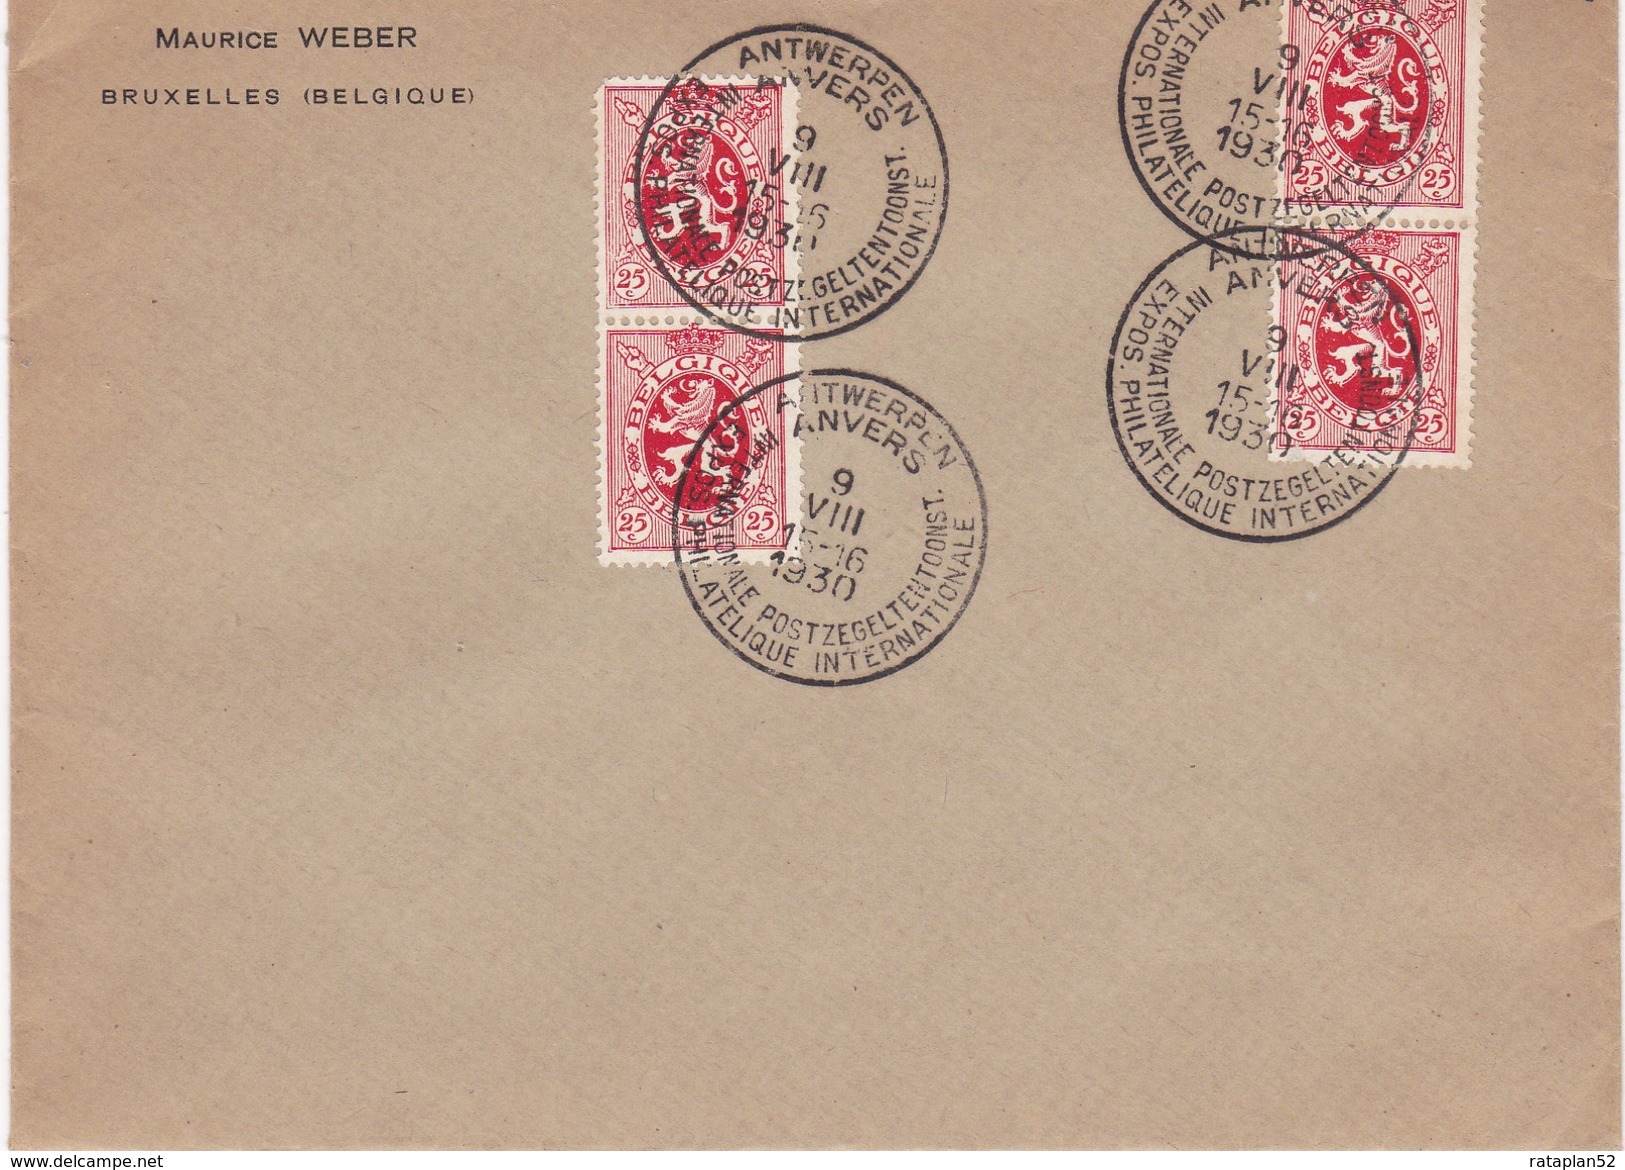 Afstempeling Op Brief Van Postzegel 282 ( 4 X) . Met Speciale Poststempel Antwerpen Philatelique 9 - VIII -1930 - Herdenkingsdocumenten